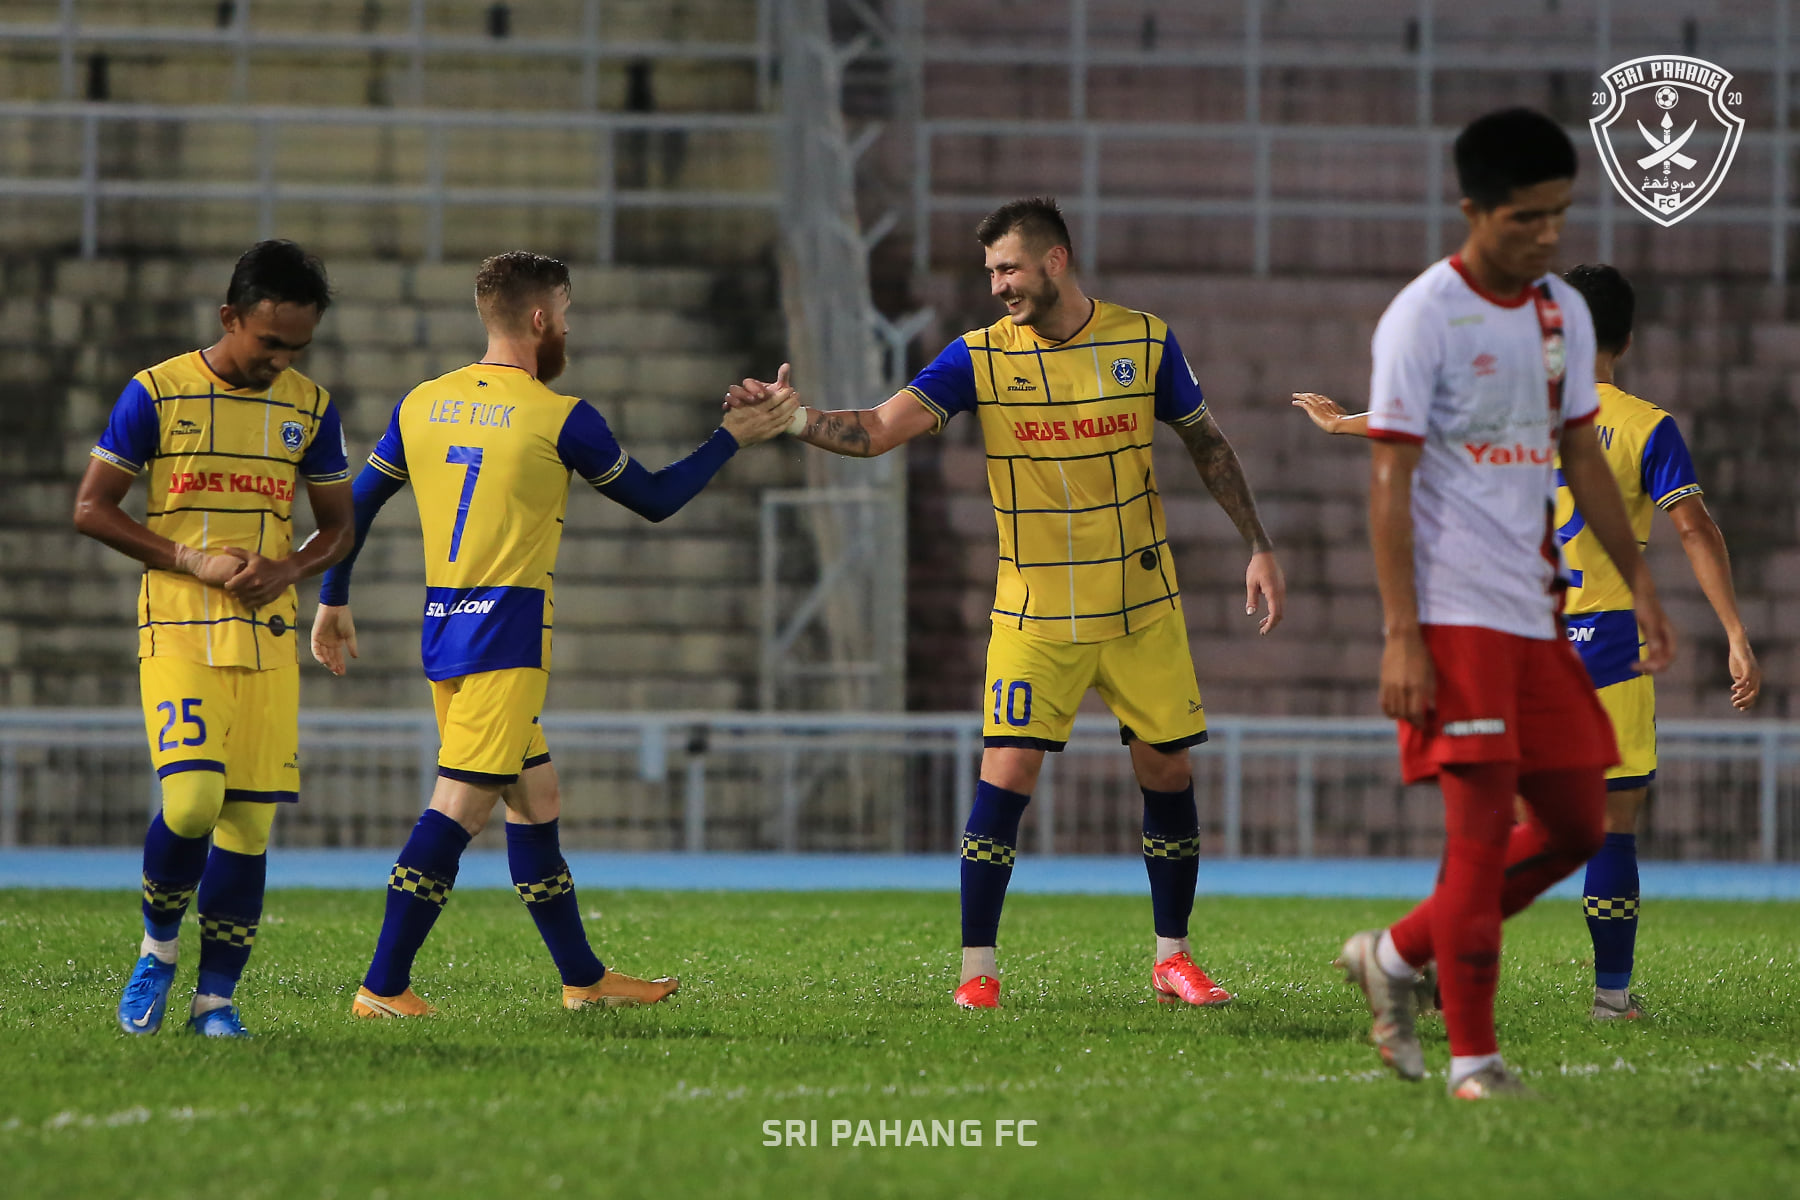 Sri Pahang FC